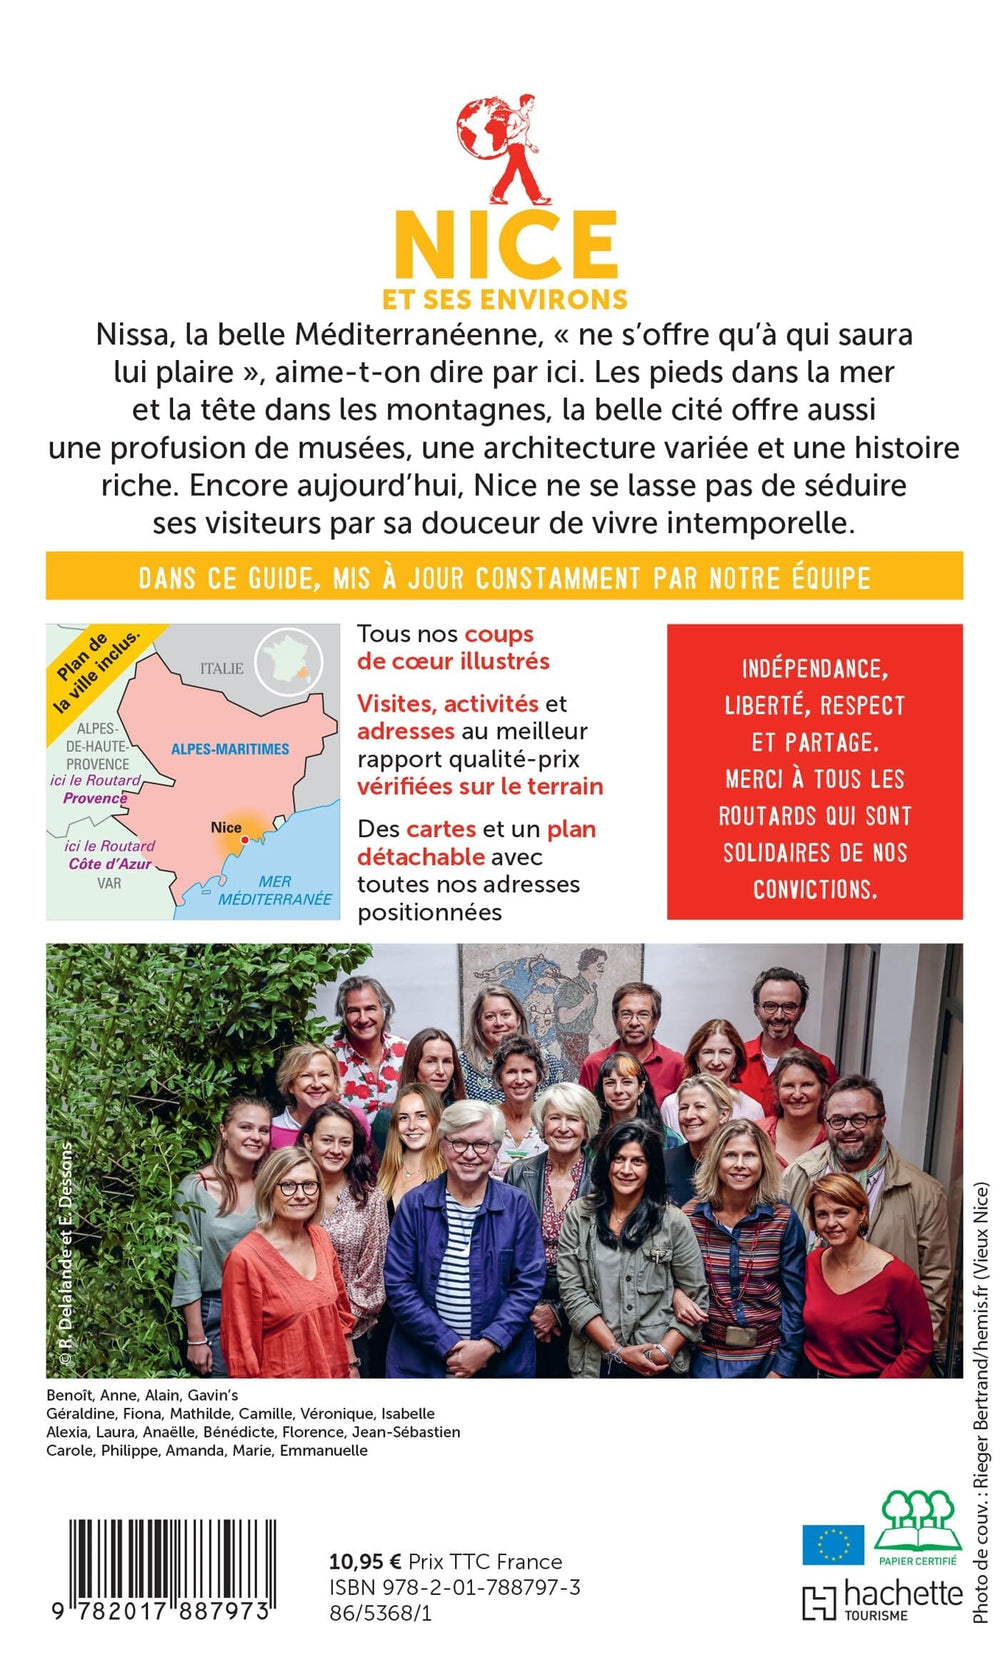 Guide du Routard - Nice 2022/23 | Hachette guide petit format Hachette 